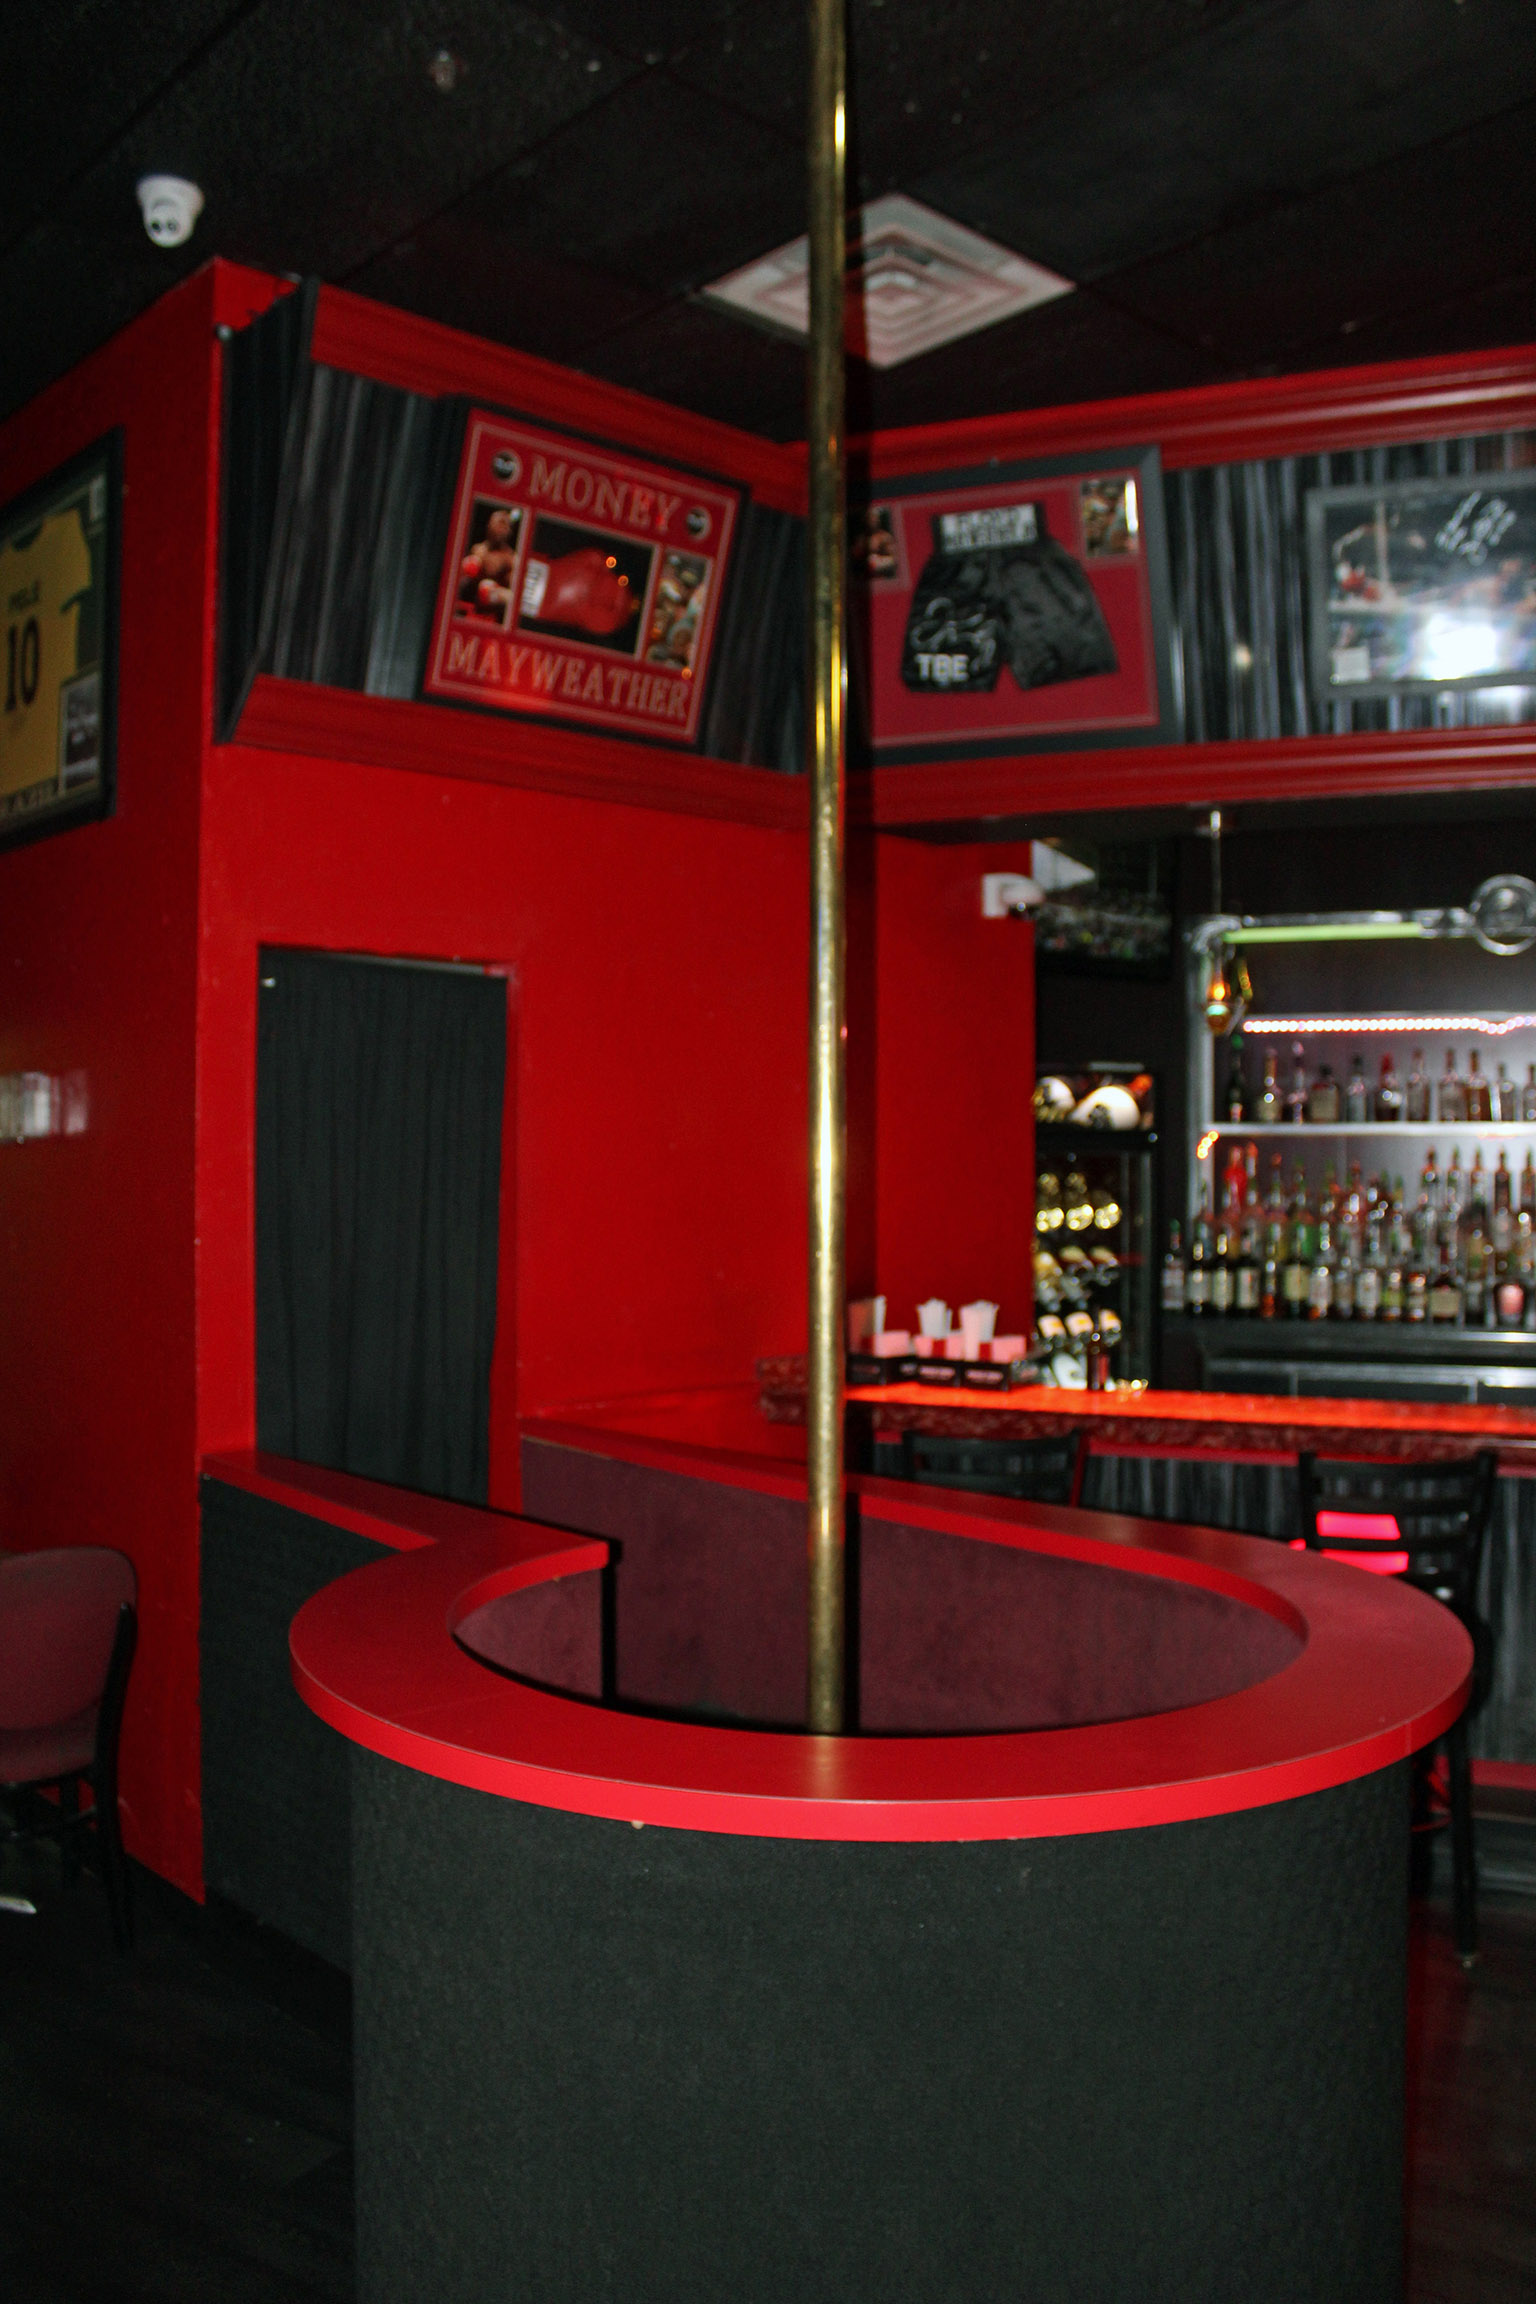 Strip Clubs & Adult fun near Buffalo NY | Pharaoh's ...